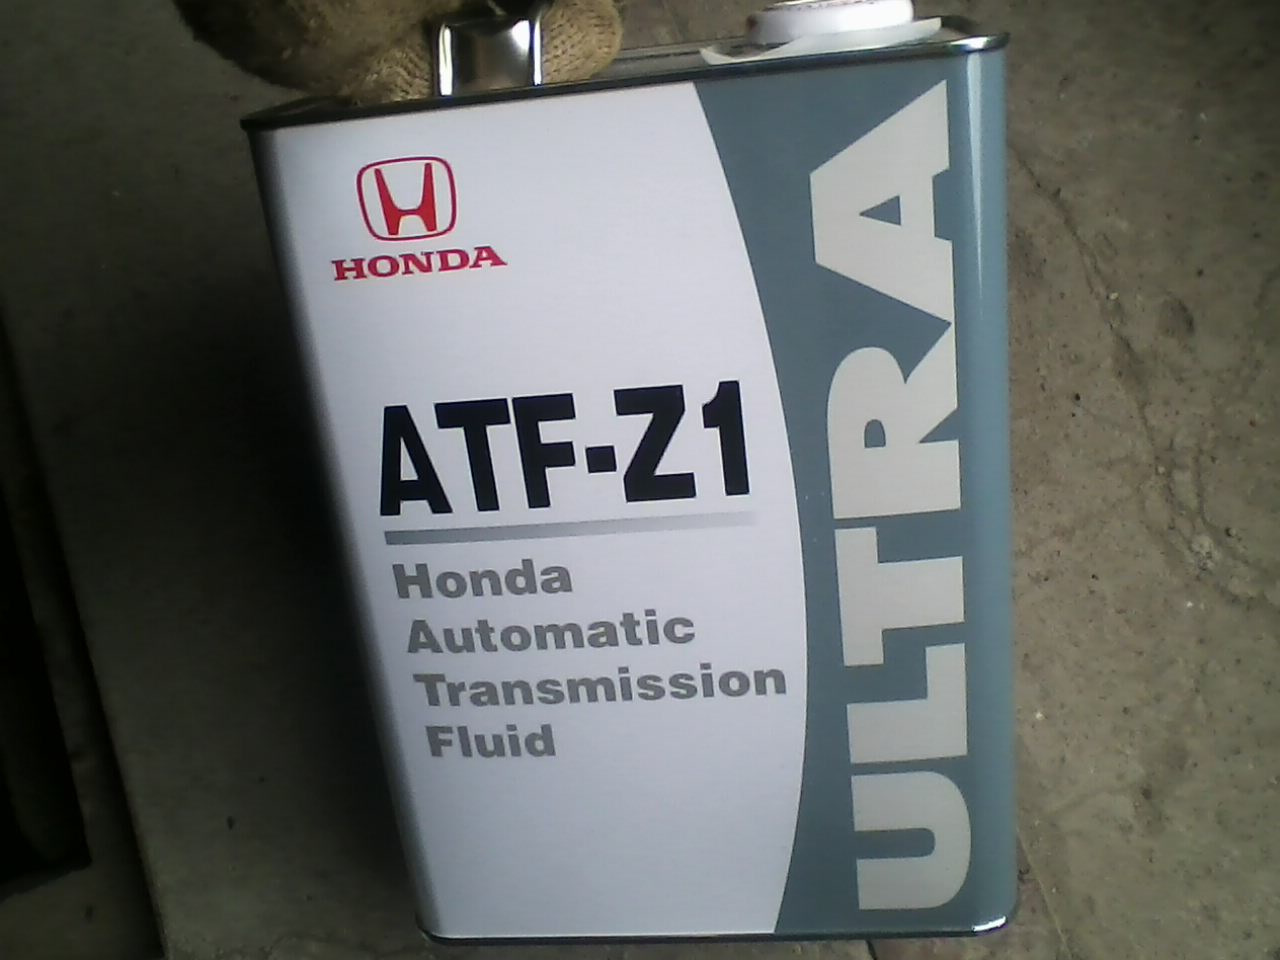 Honda fit какое масло. Хонда джаз масло в вариатор 1,3 4 литра. Масло Хонда фит 1.3 вариатор. Масло вариатор Хонда фит 2002г. Fit 2002 масло вариатора.